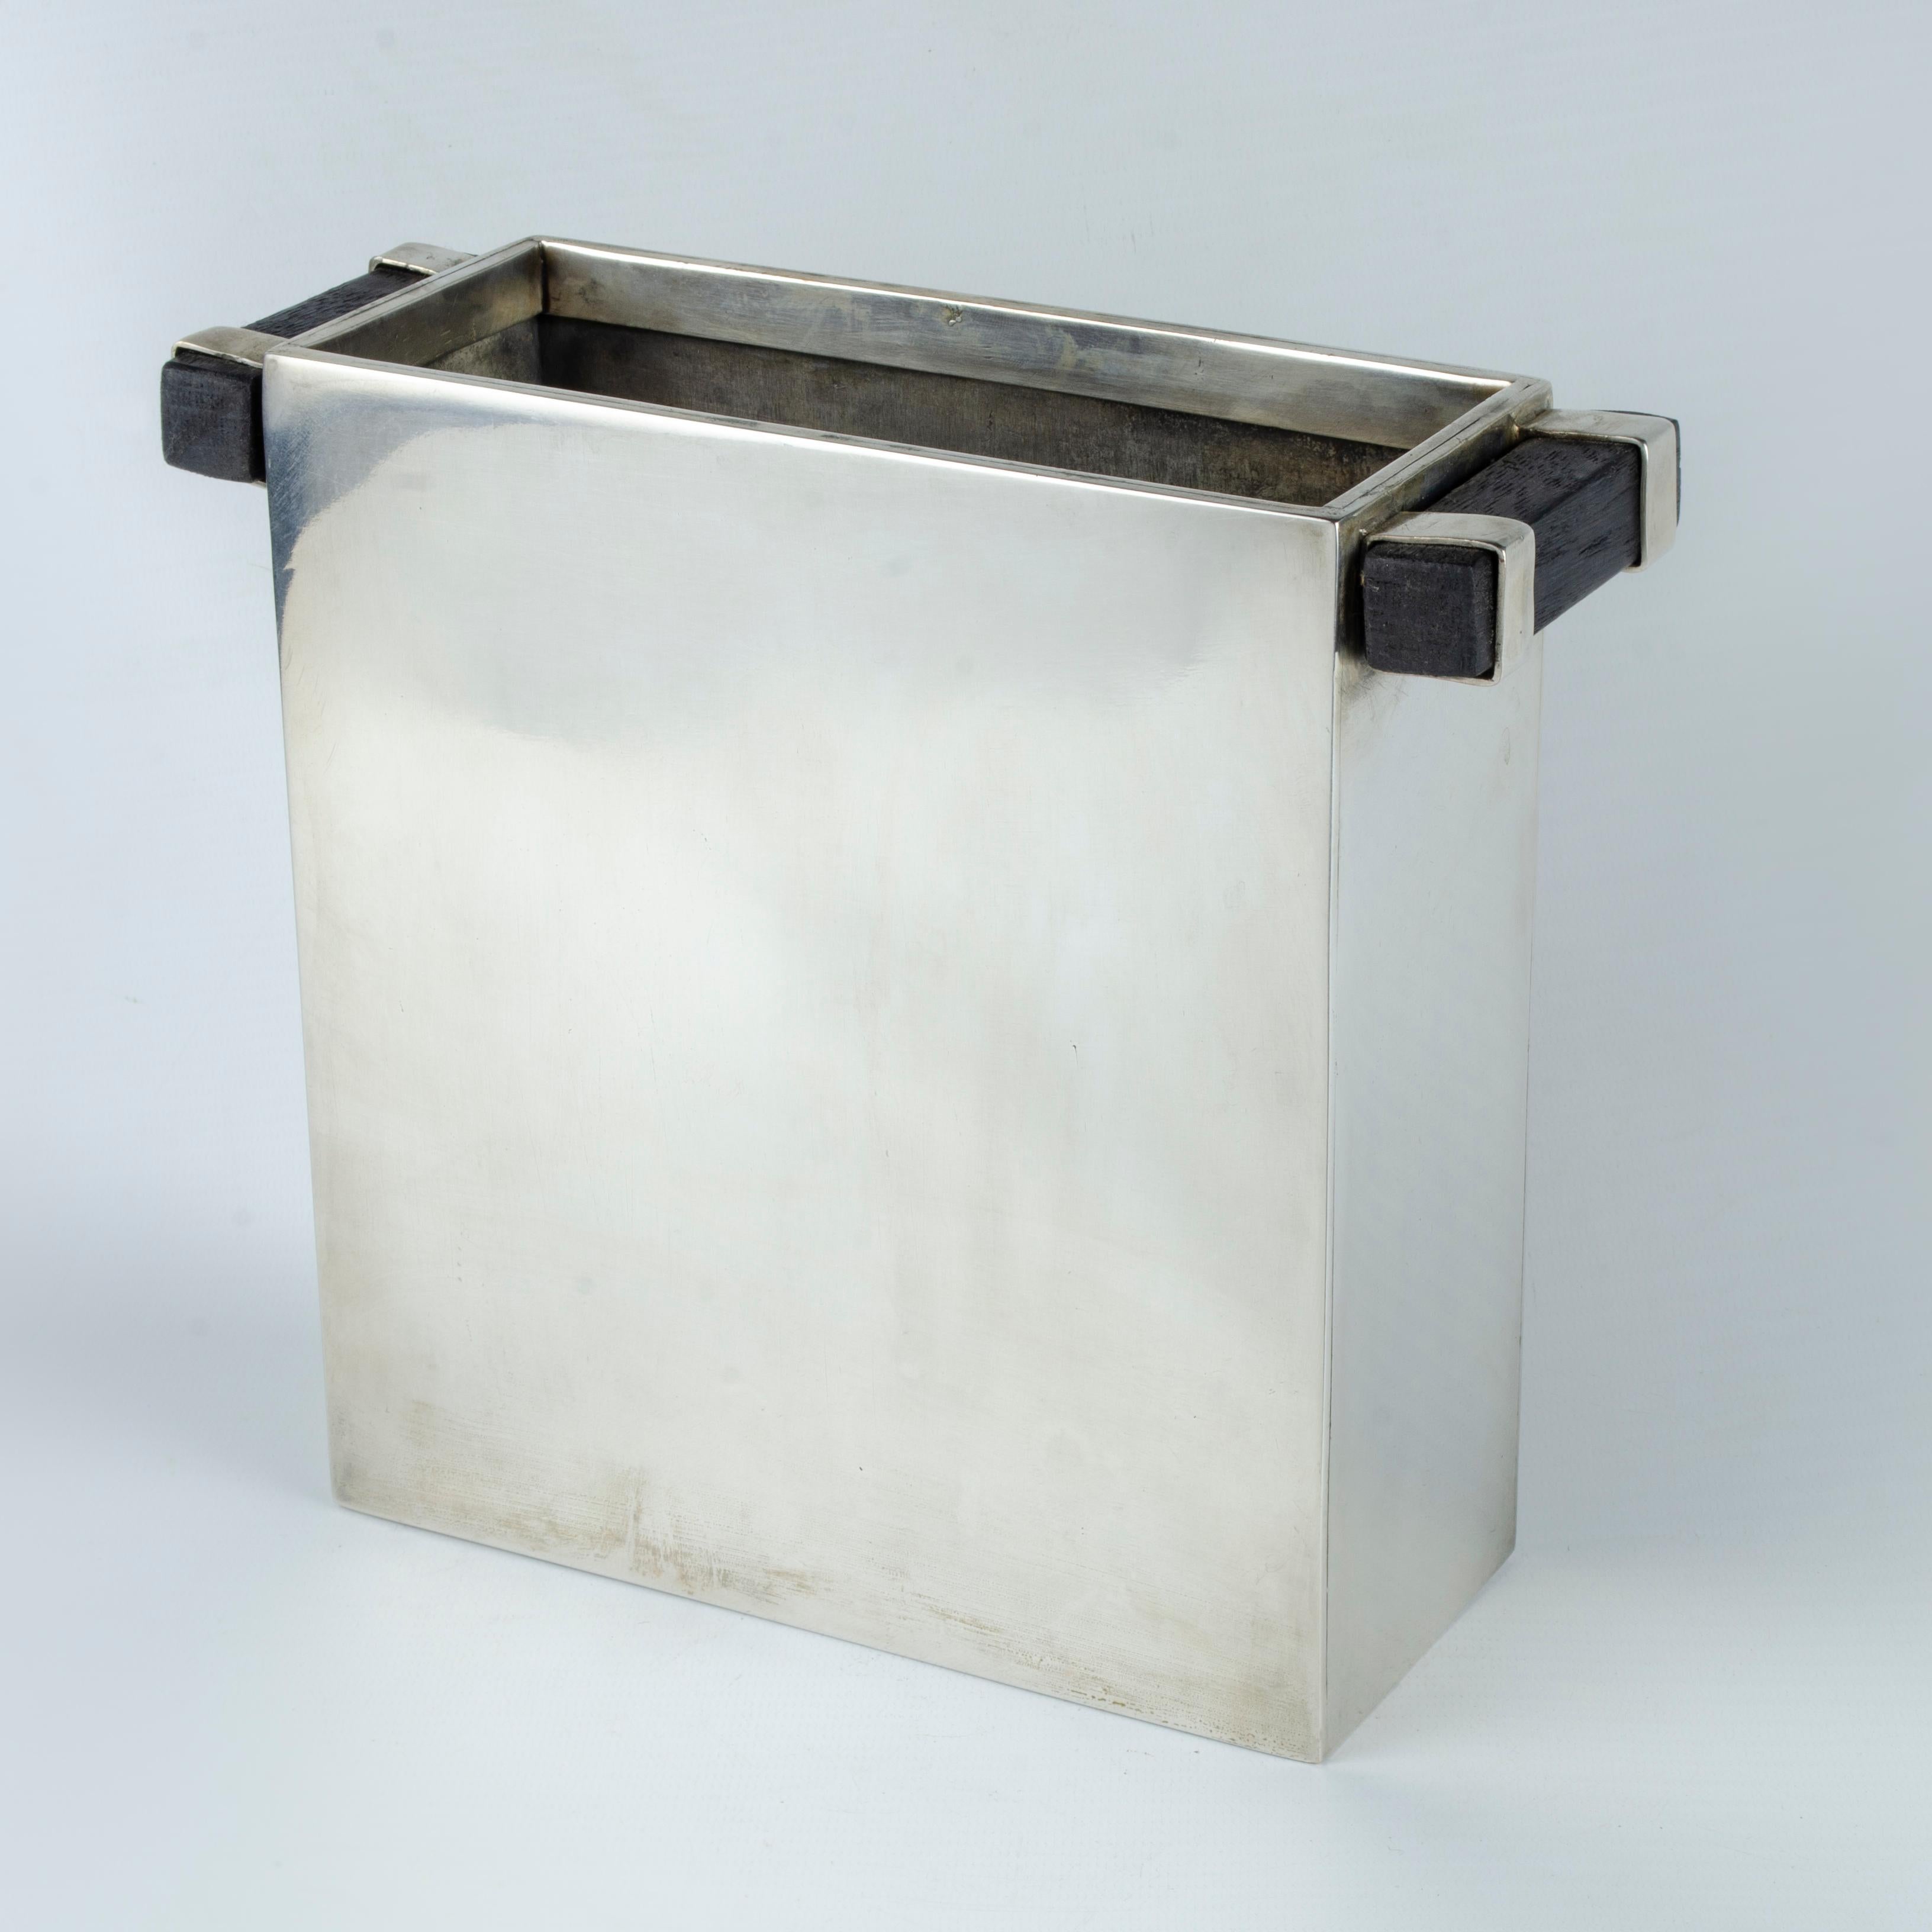 Vase rectangulaire, en métal argenté avec des poignées en bois, conçu par la Maison Desny Paris (1927-1933). Il a été produit en différentes tailles. Un de ces spécimens est exposé dans le 